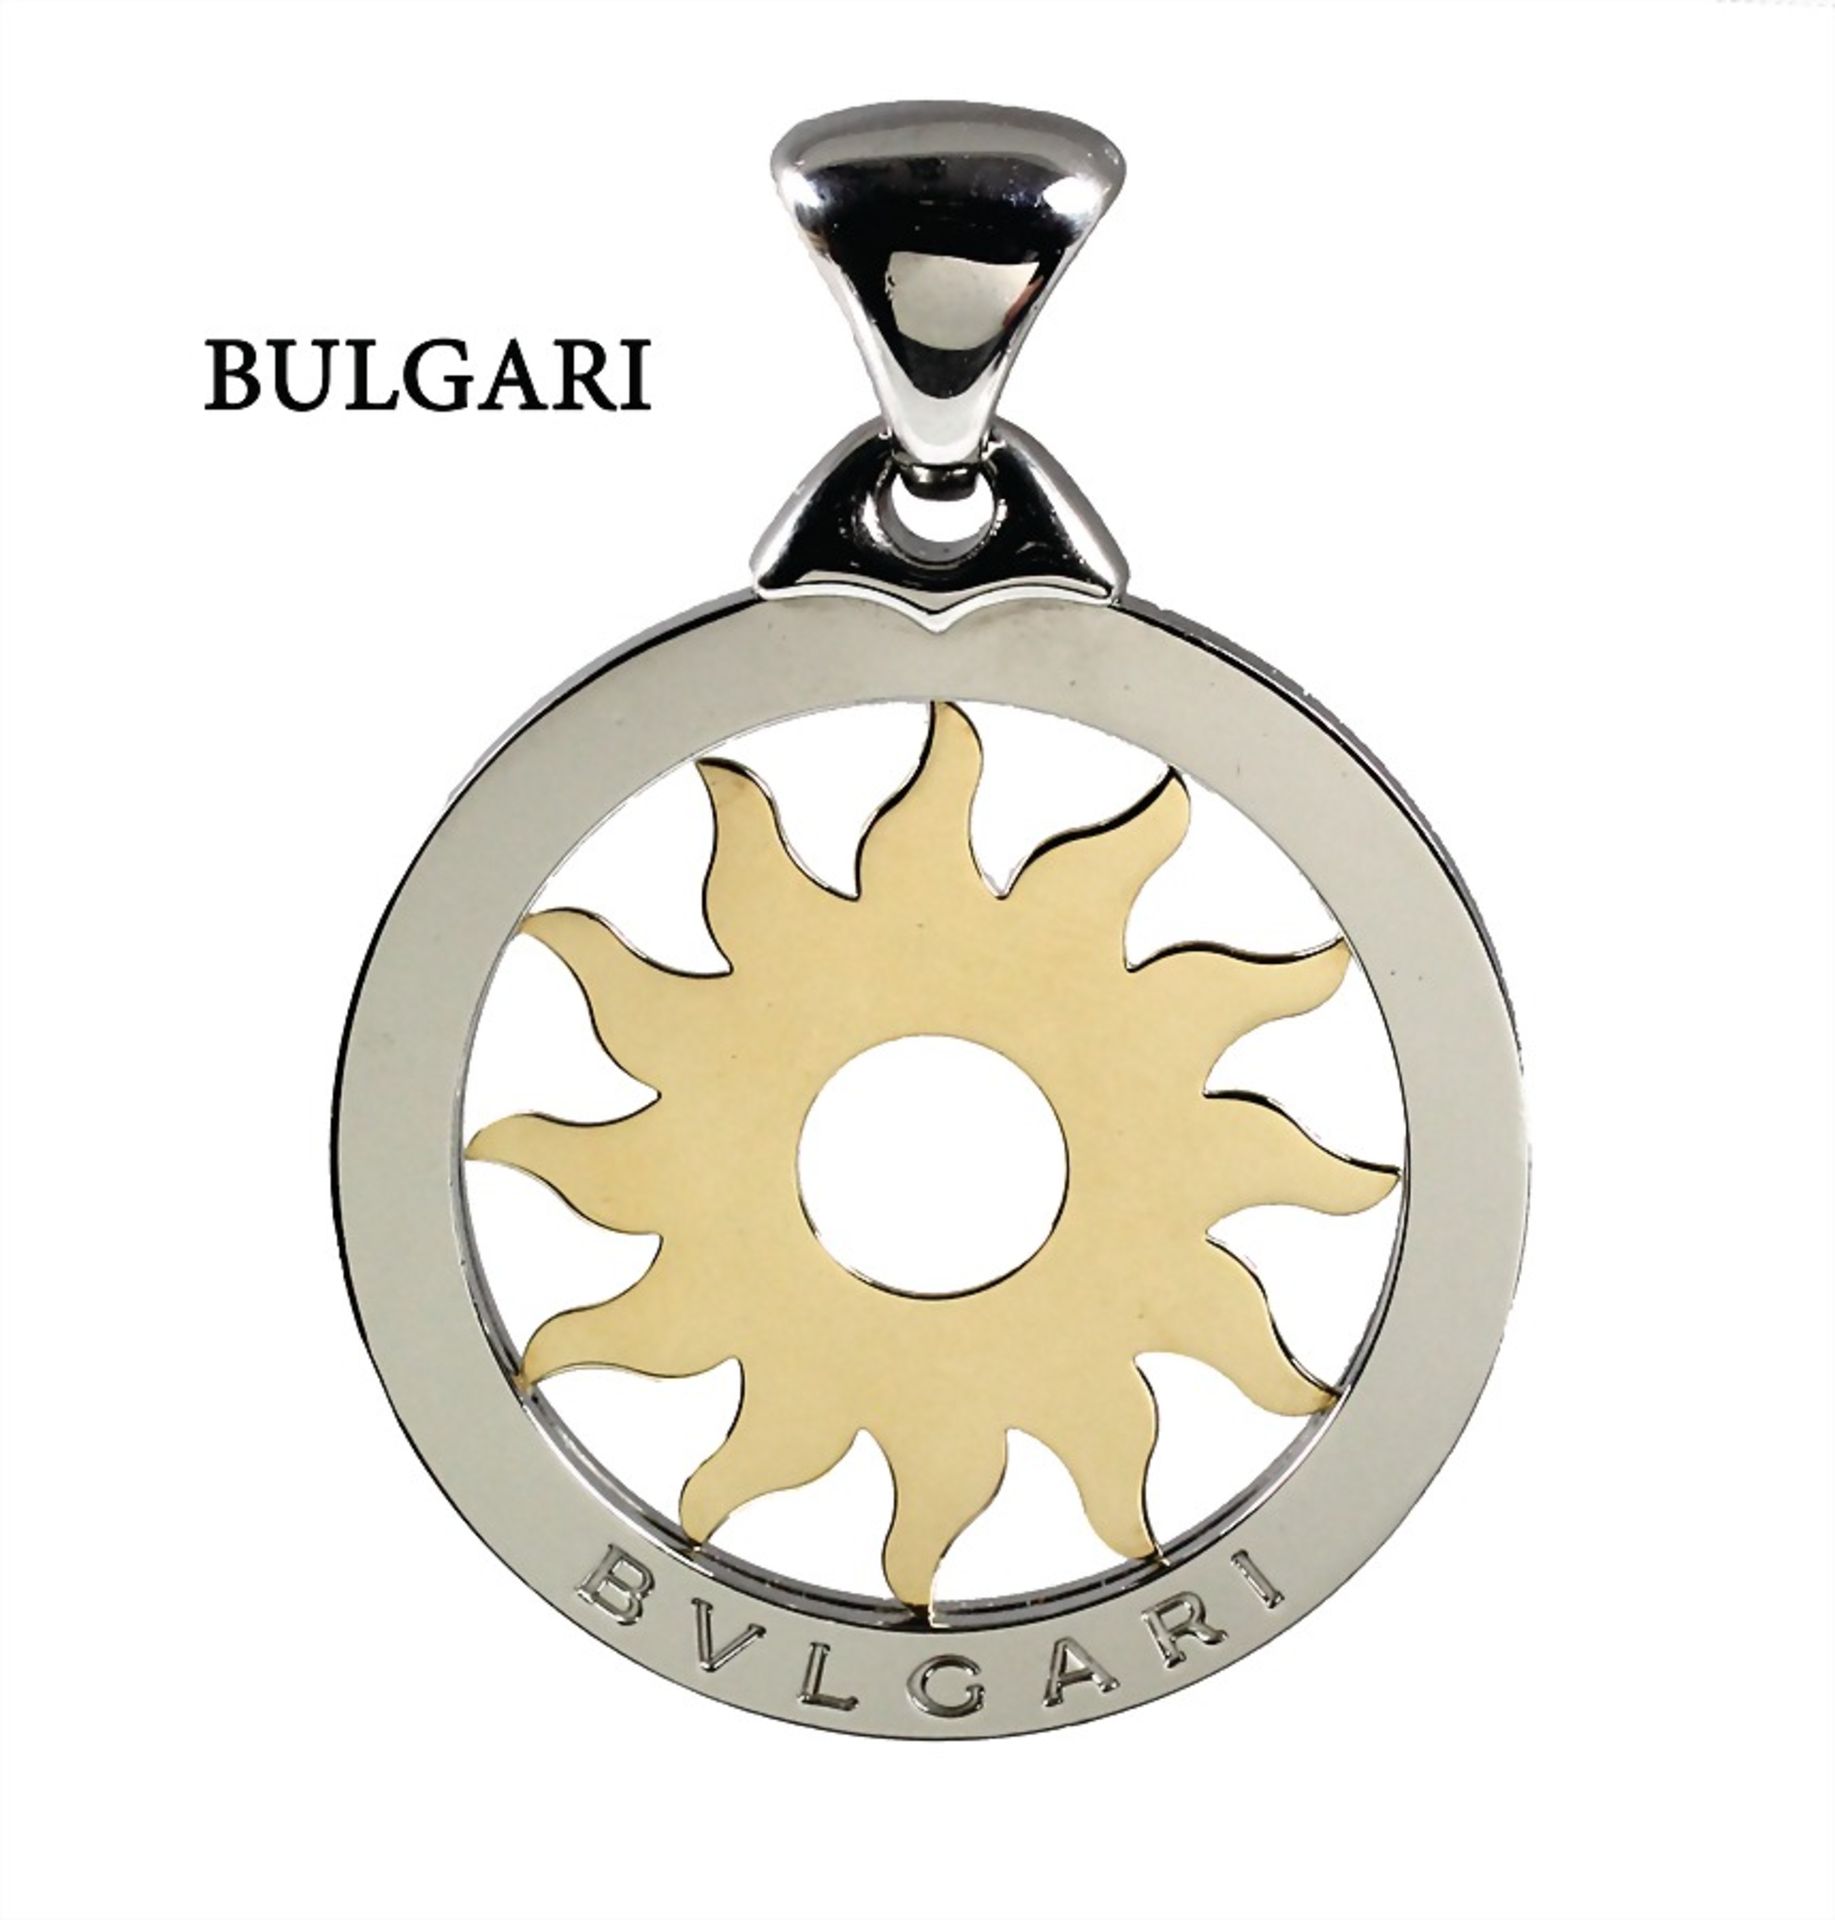 Anhänger, BULGARI TONDO, Stahl, GG 750/000, sig. BULGARI 750, eine Sonne im Kreis D = 43,5 mm, ...